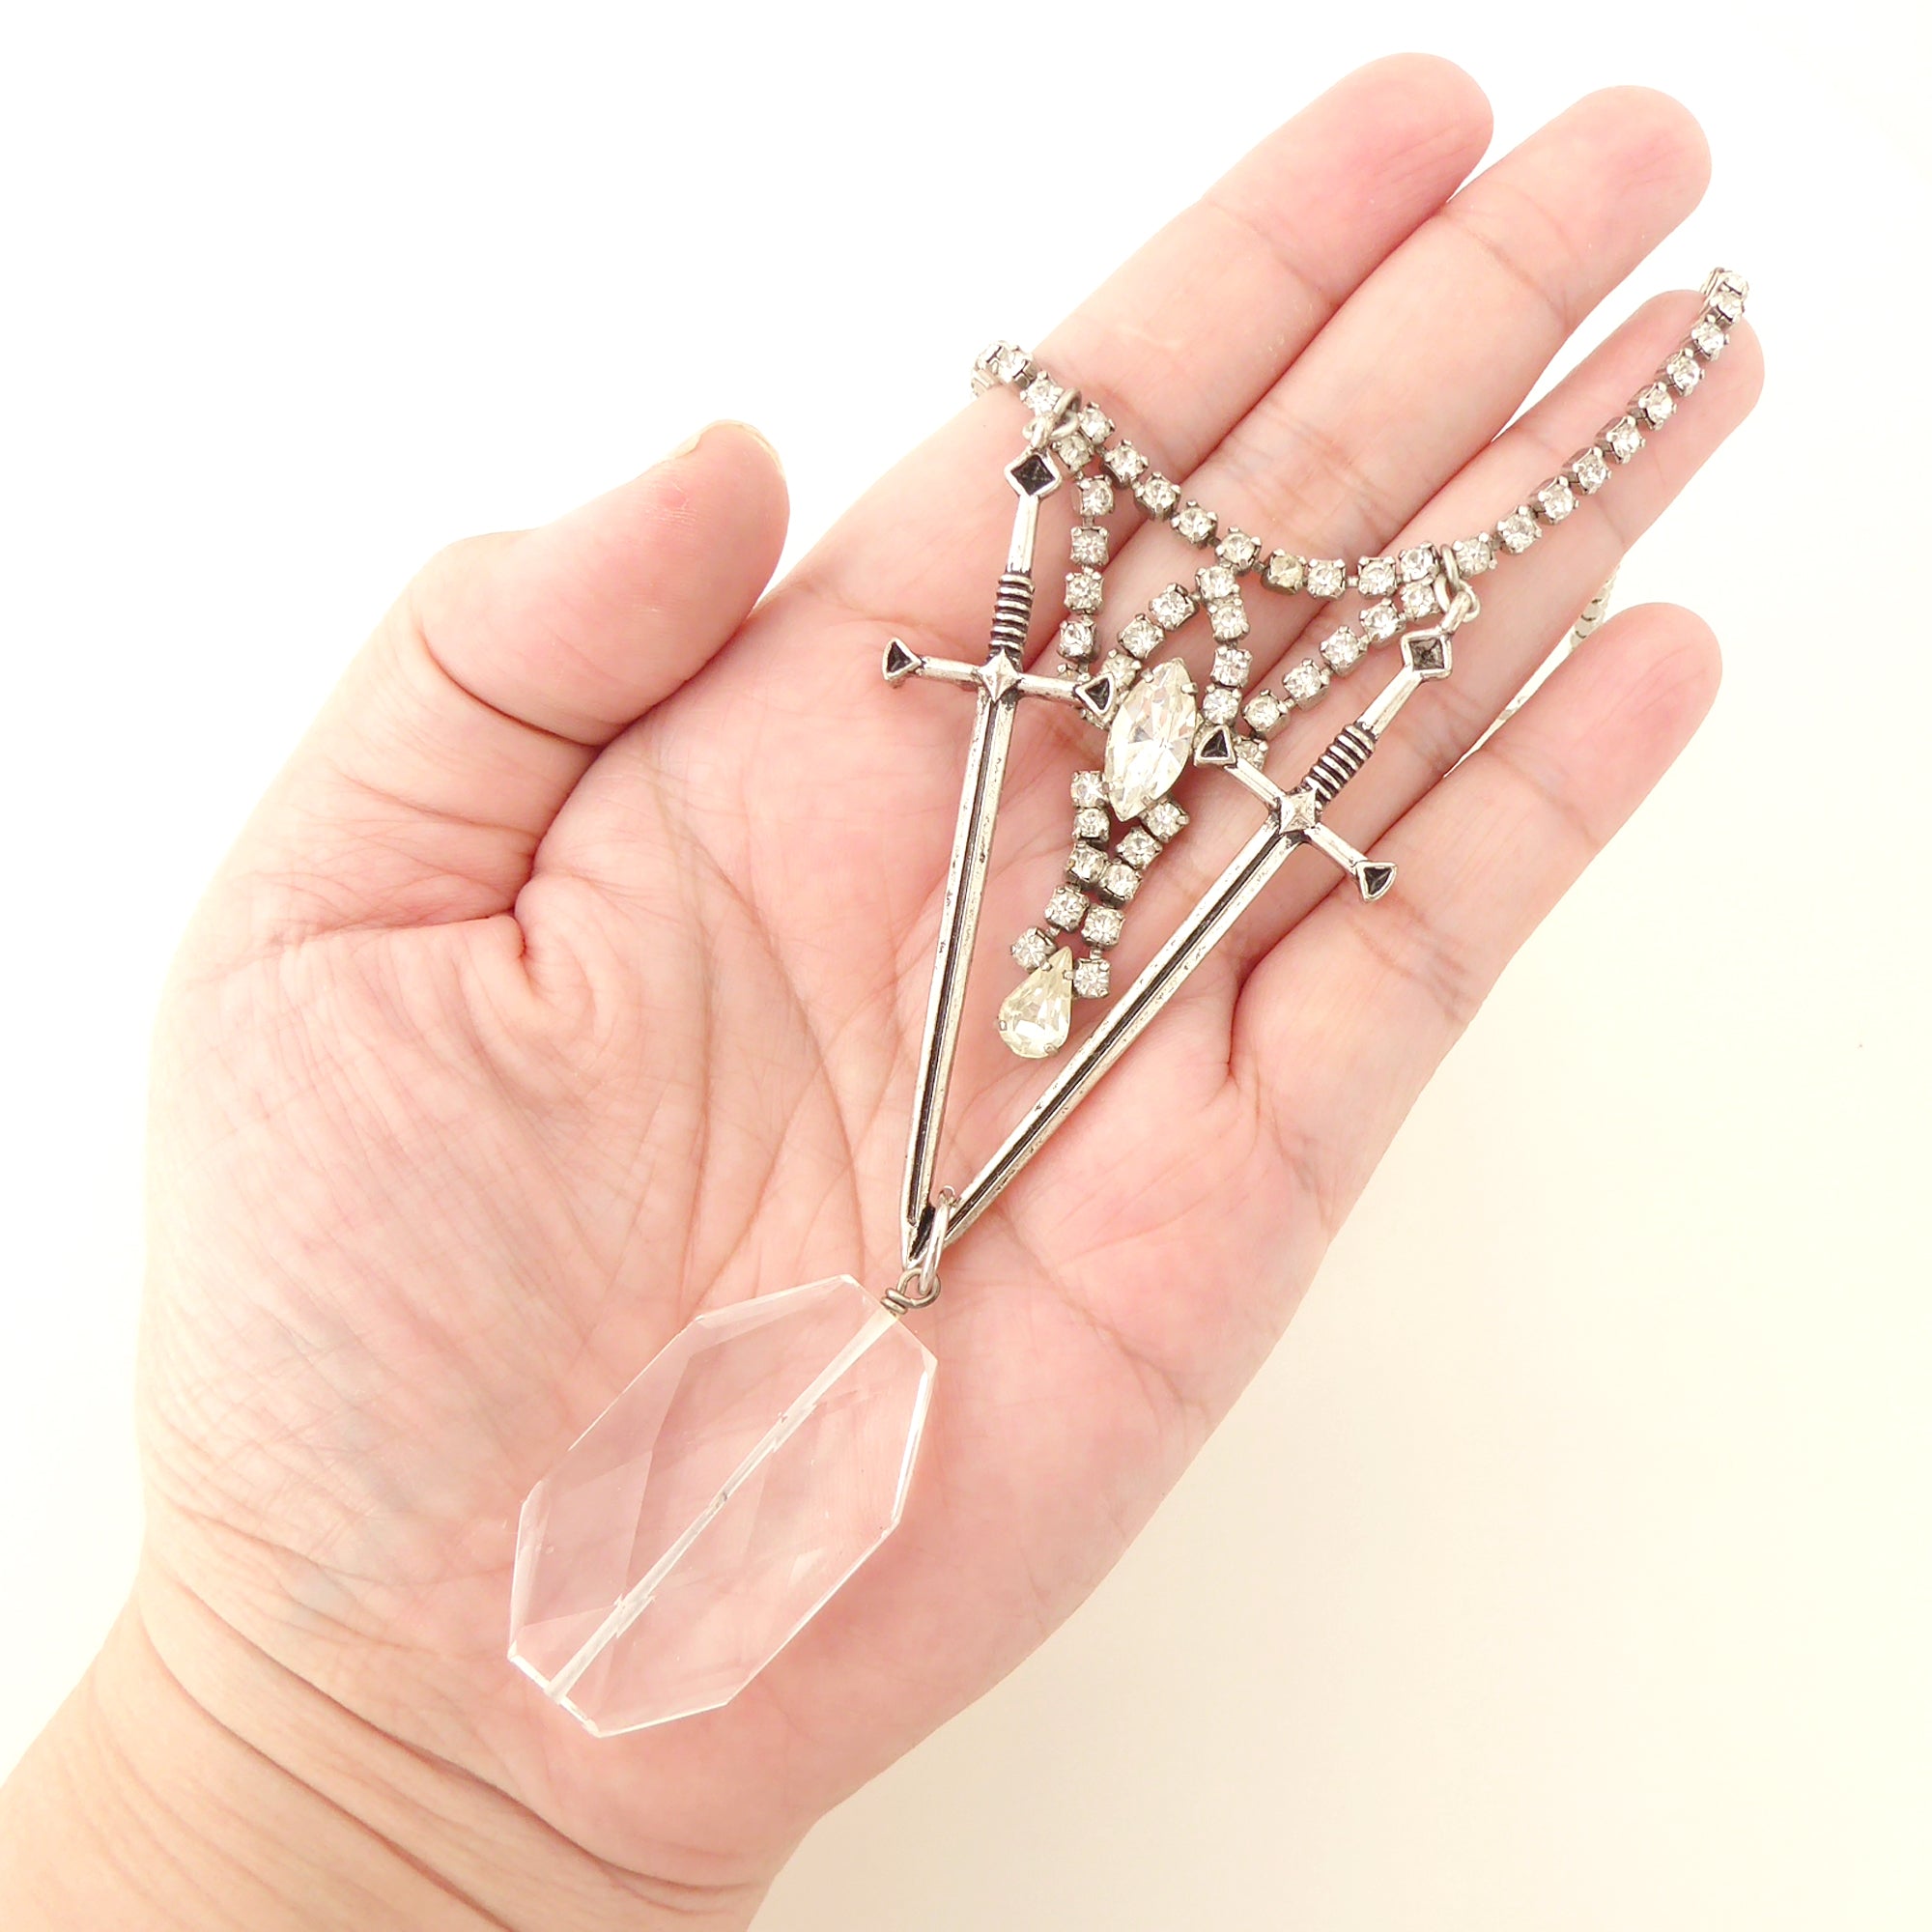 Dual sword quartz necklace by Jenny Dayco 7